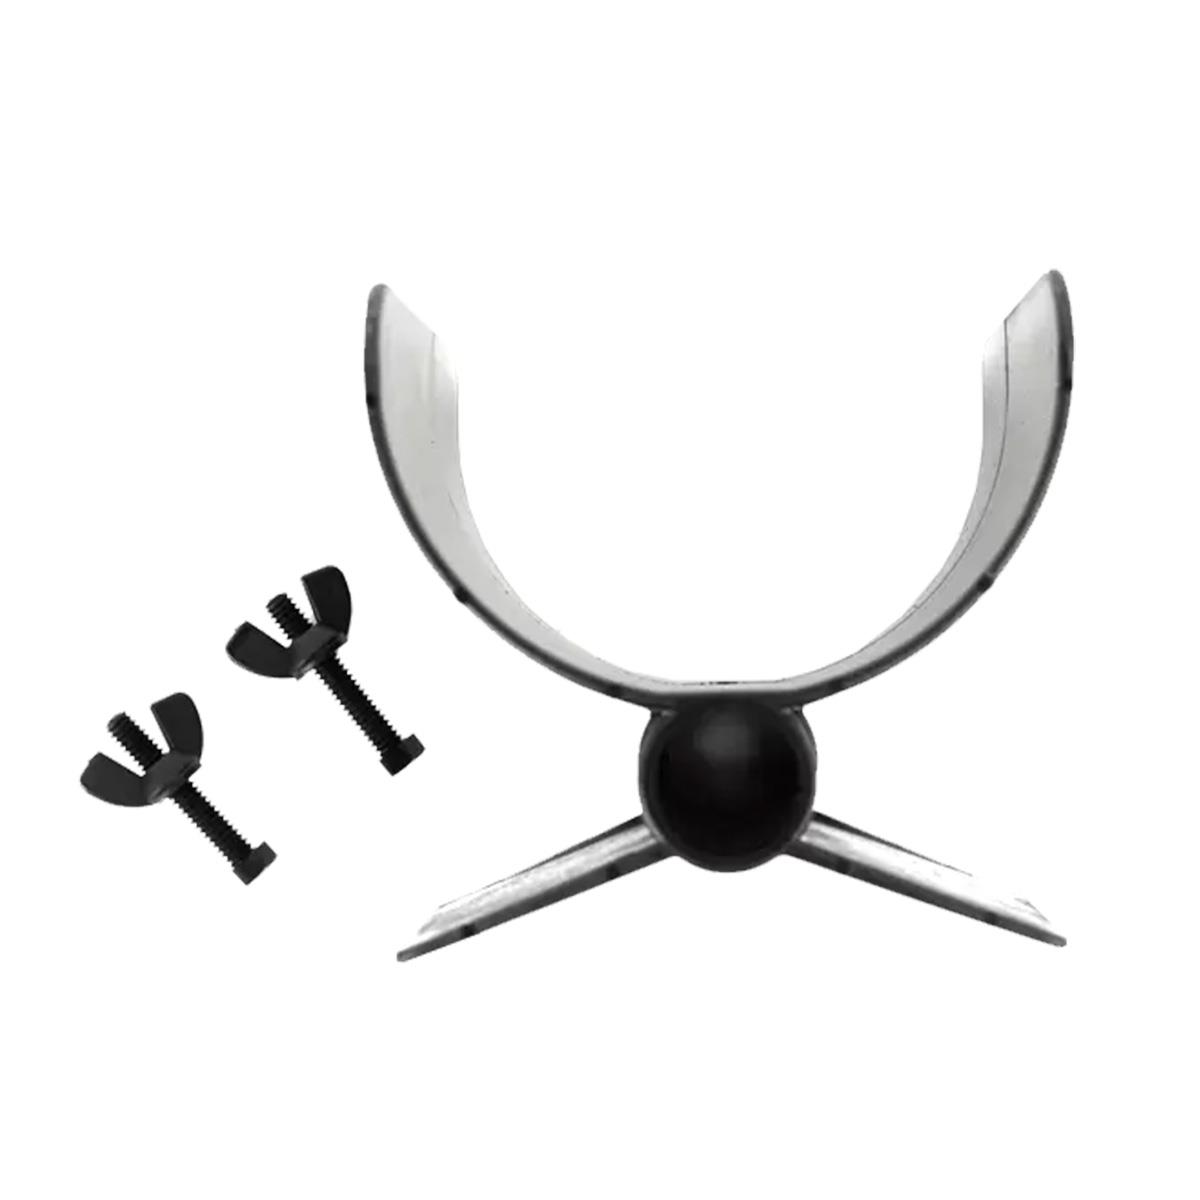 Image of Minelab Armrest Kit for Excalibur